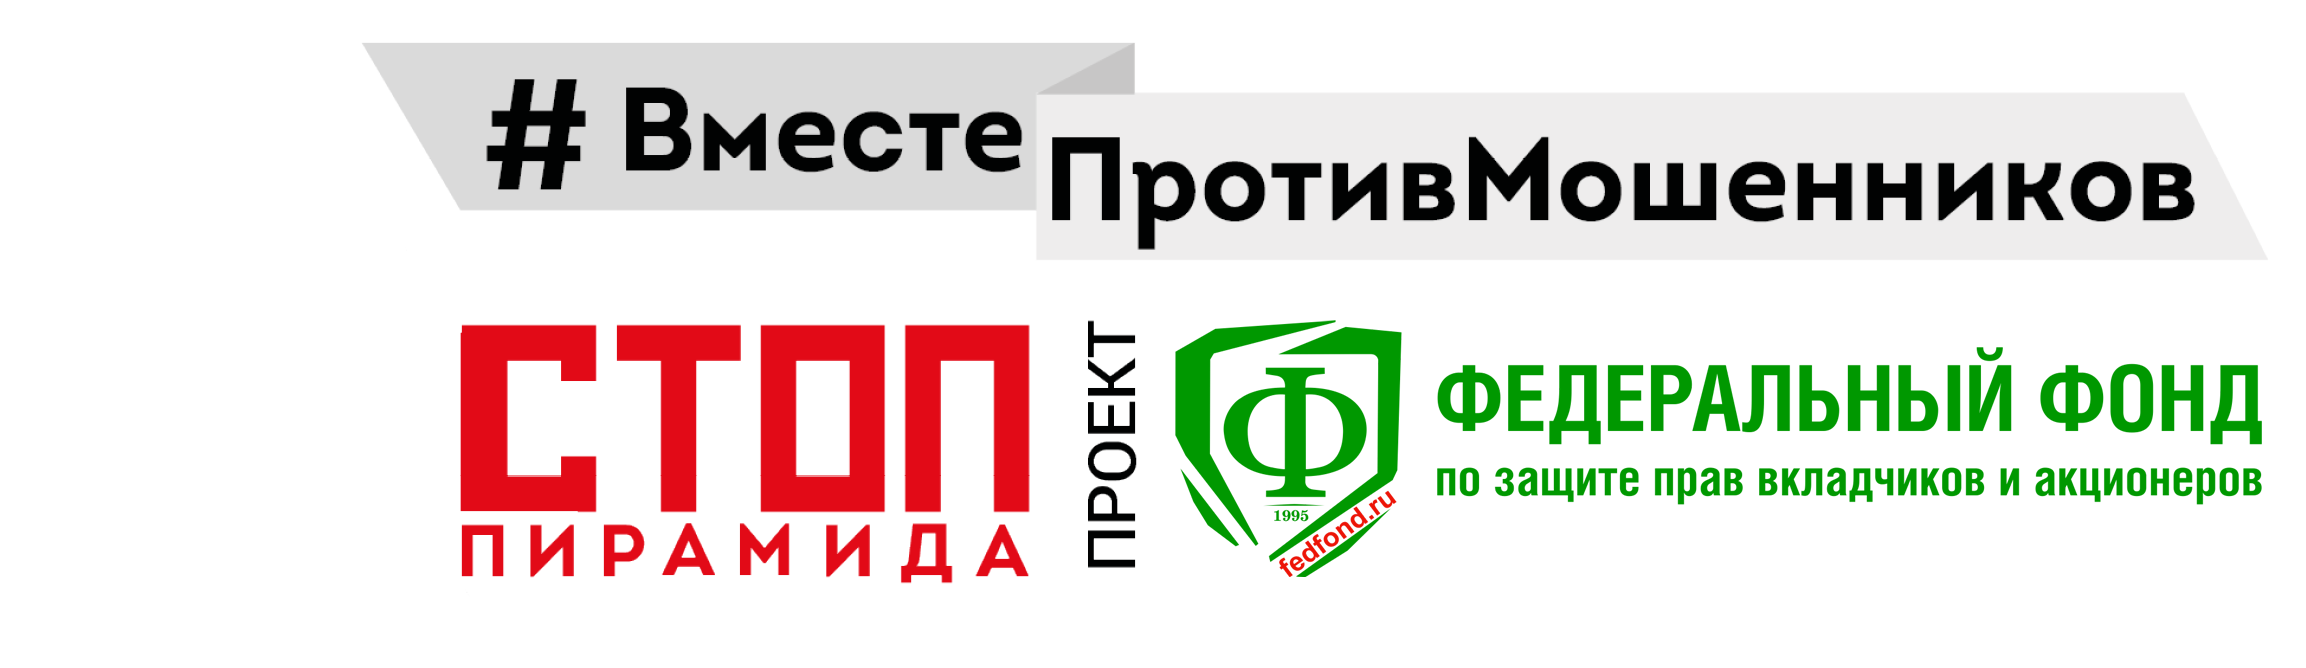 «Рублевая зона – 2023» в шахтерском краю - Новости - Стоппирамида, Вместе против мошенников